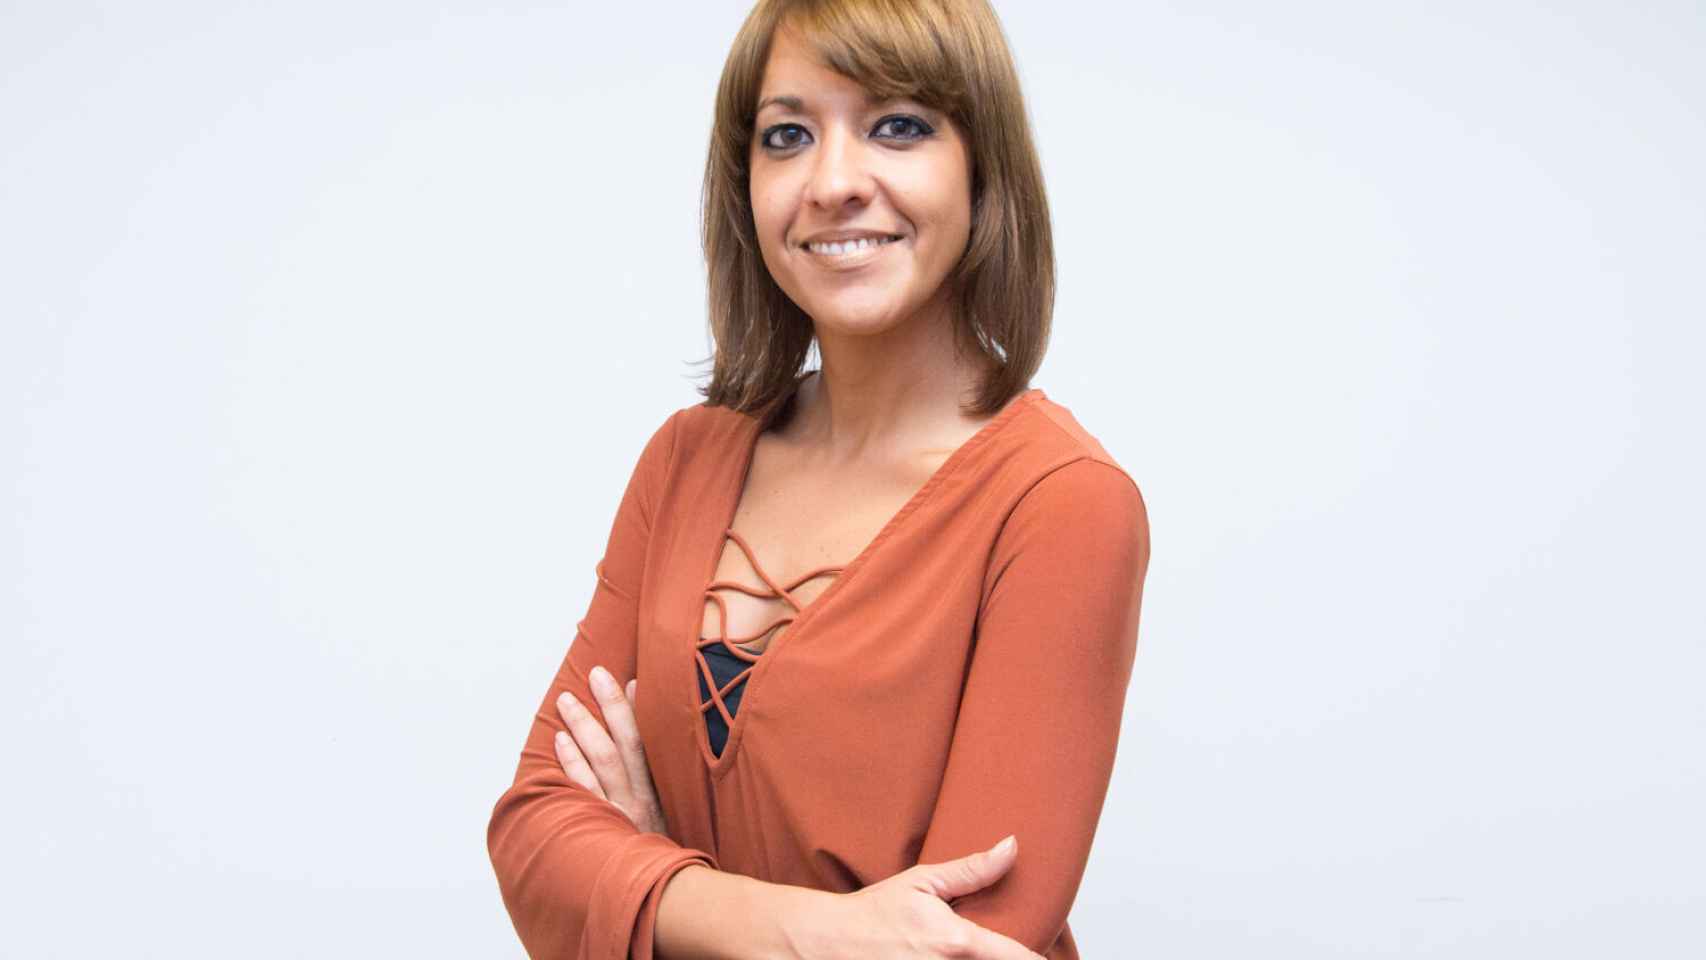 La periodista Elia Rodríguez ha fallecido a los 38 años de edad.